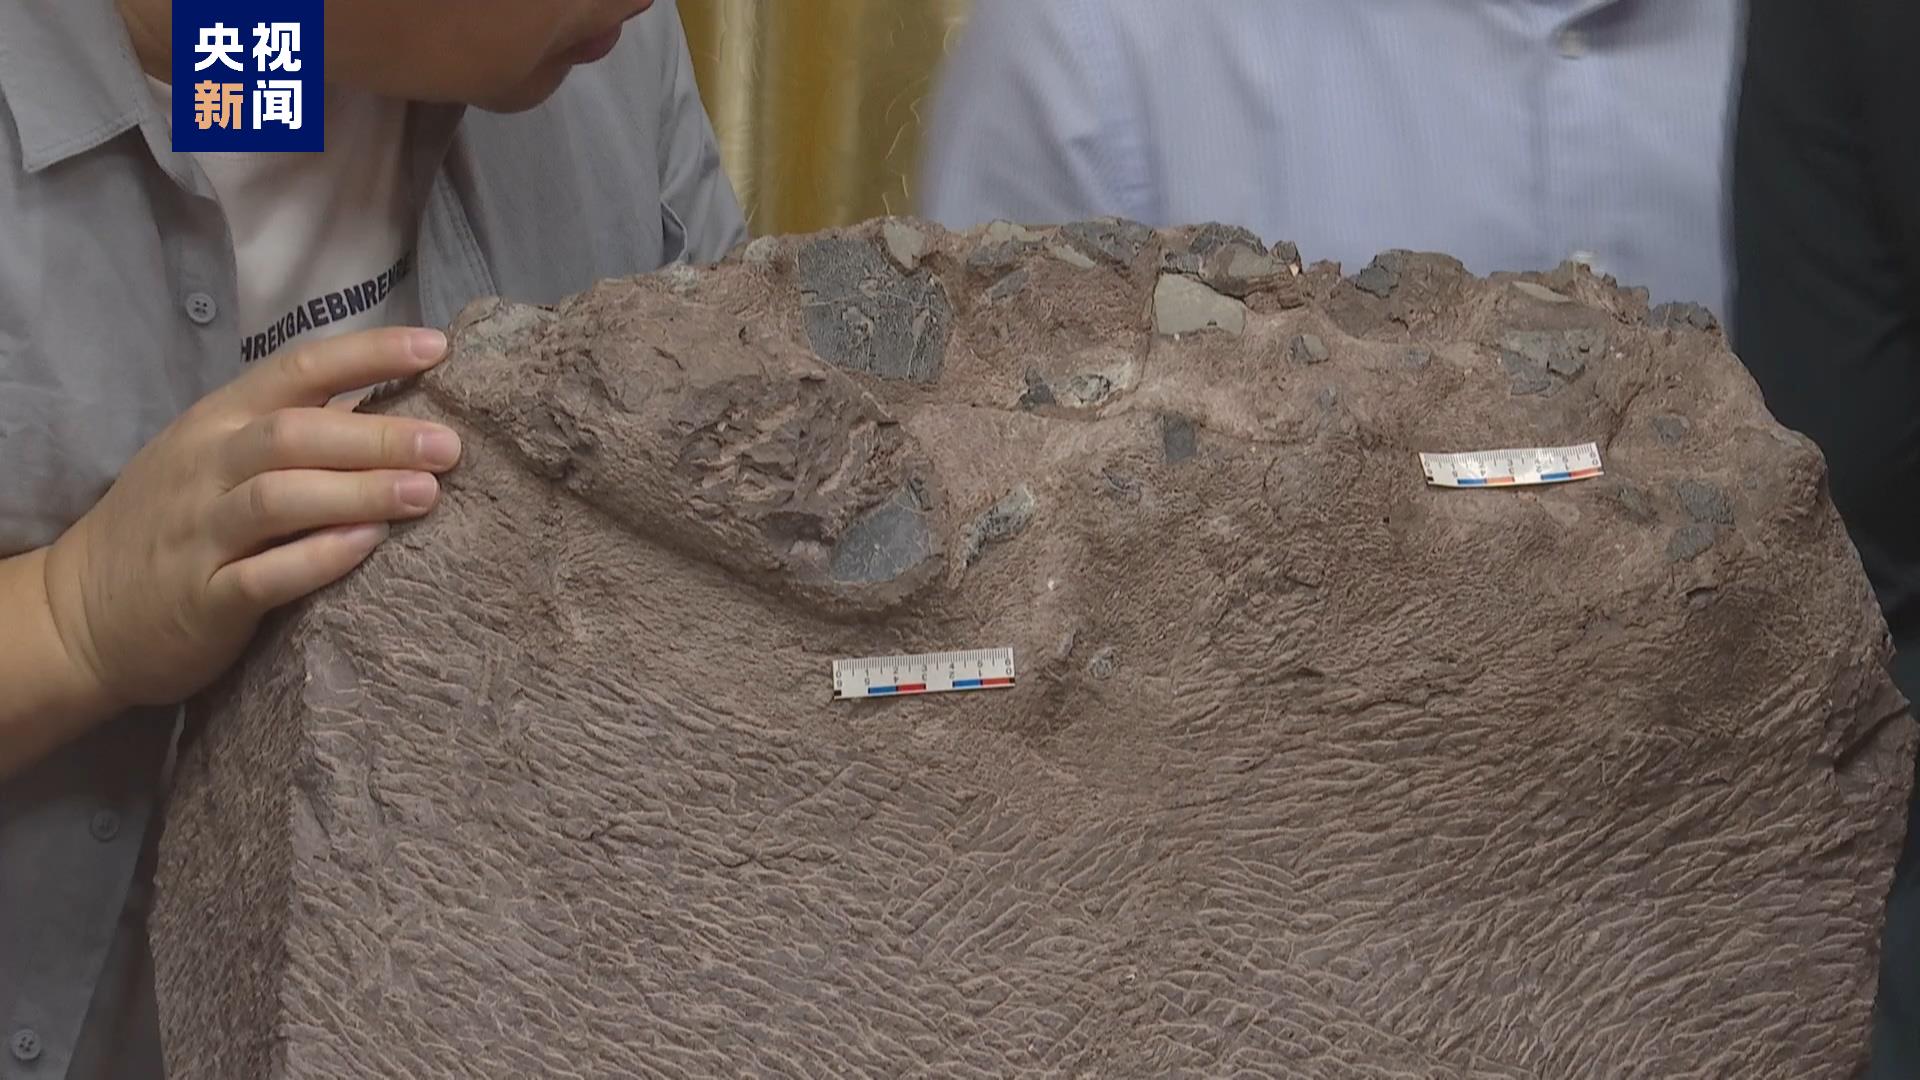 福建上杭首次发现恐龙蛋化石化石化石化石化石化